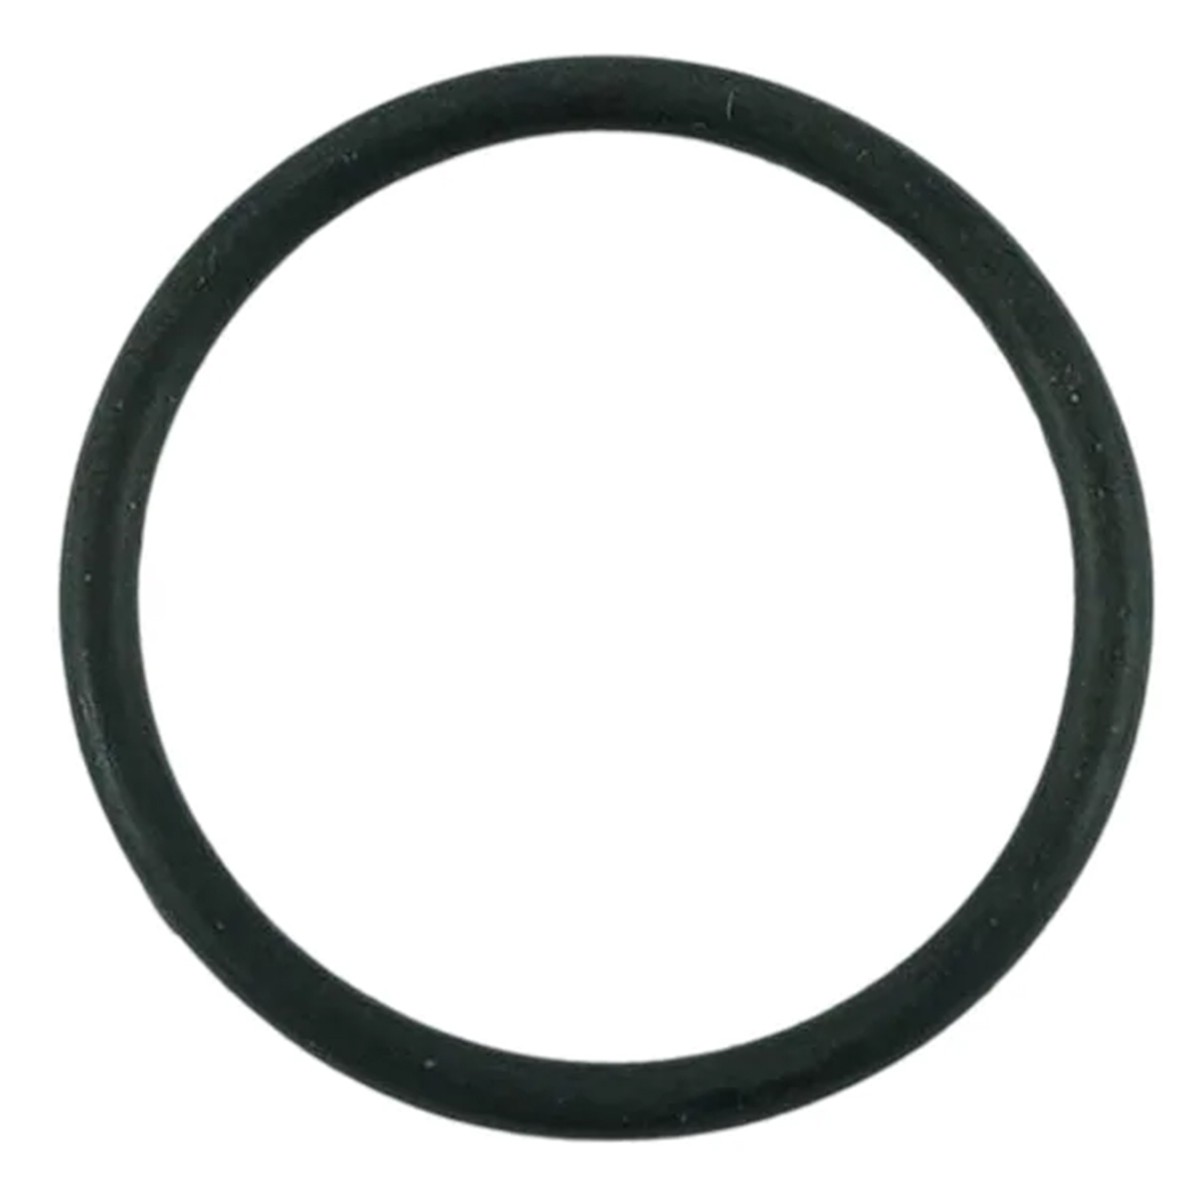 O-ring 23.50 x 2.00 mm / LS XJ25 / S804024010 / 40029244